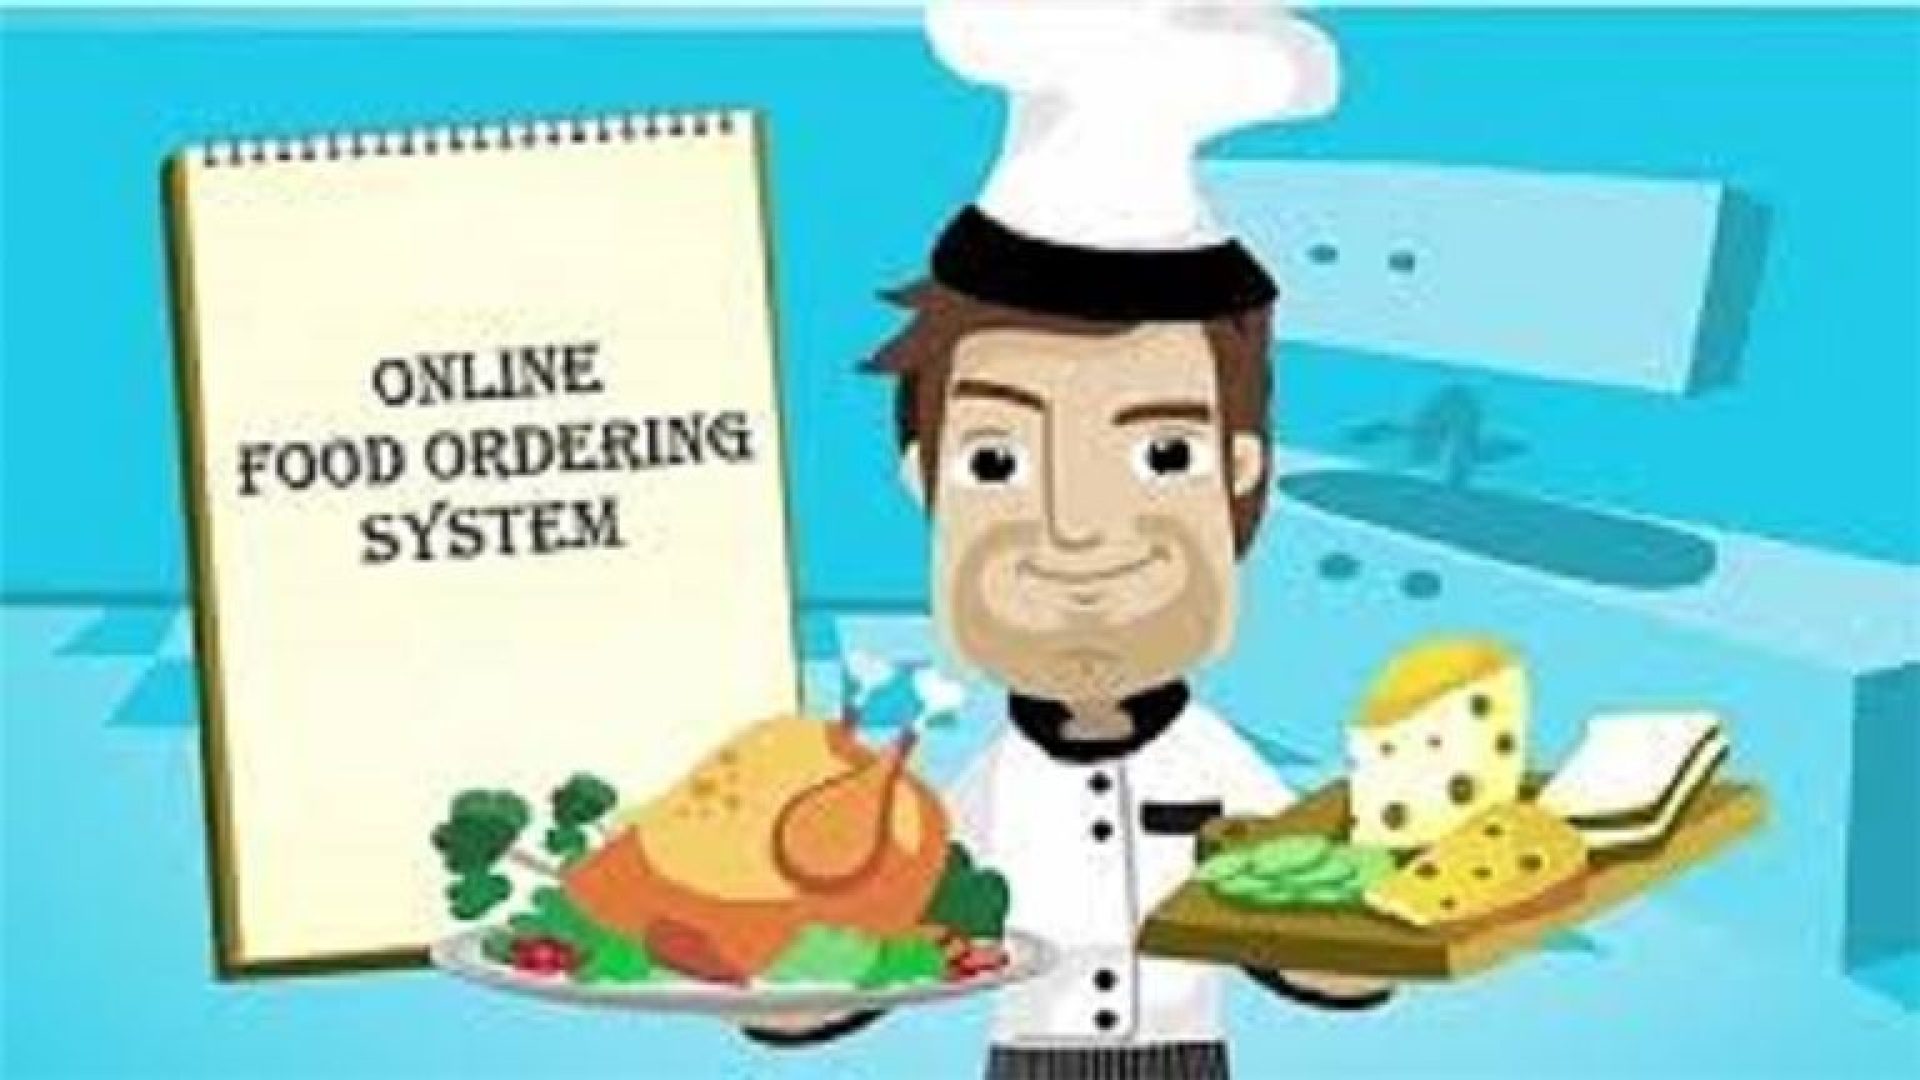 online-ordering-technology-solution-for-restaurants